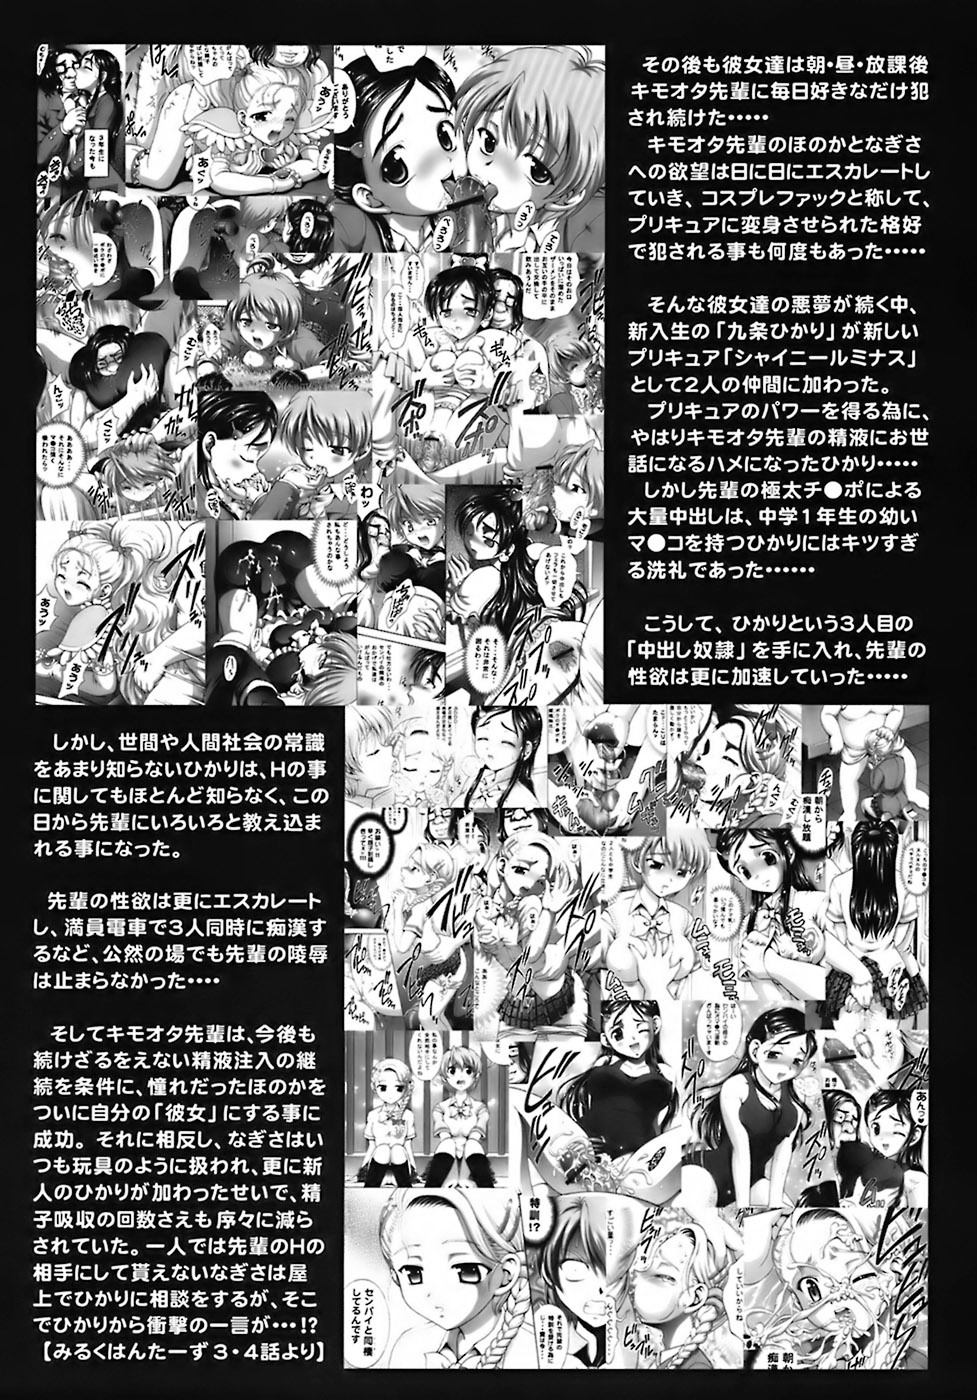 Milk Hunters 6 futari wa pretty cure 7 hentai manga